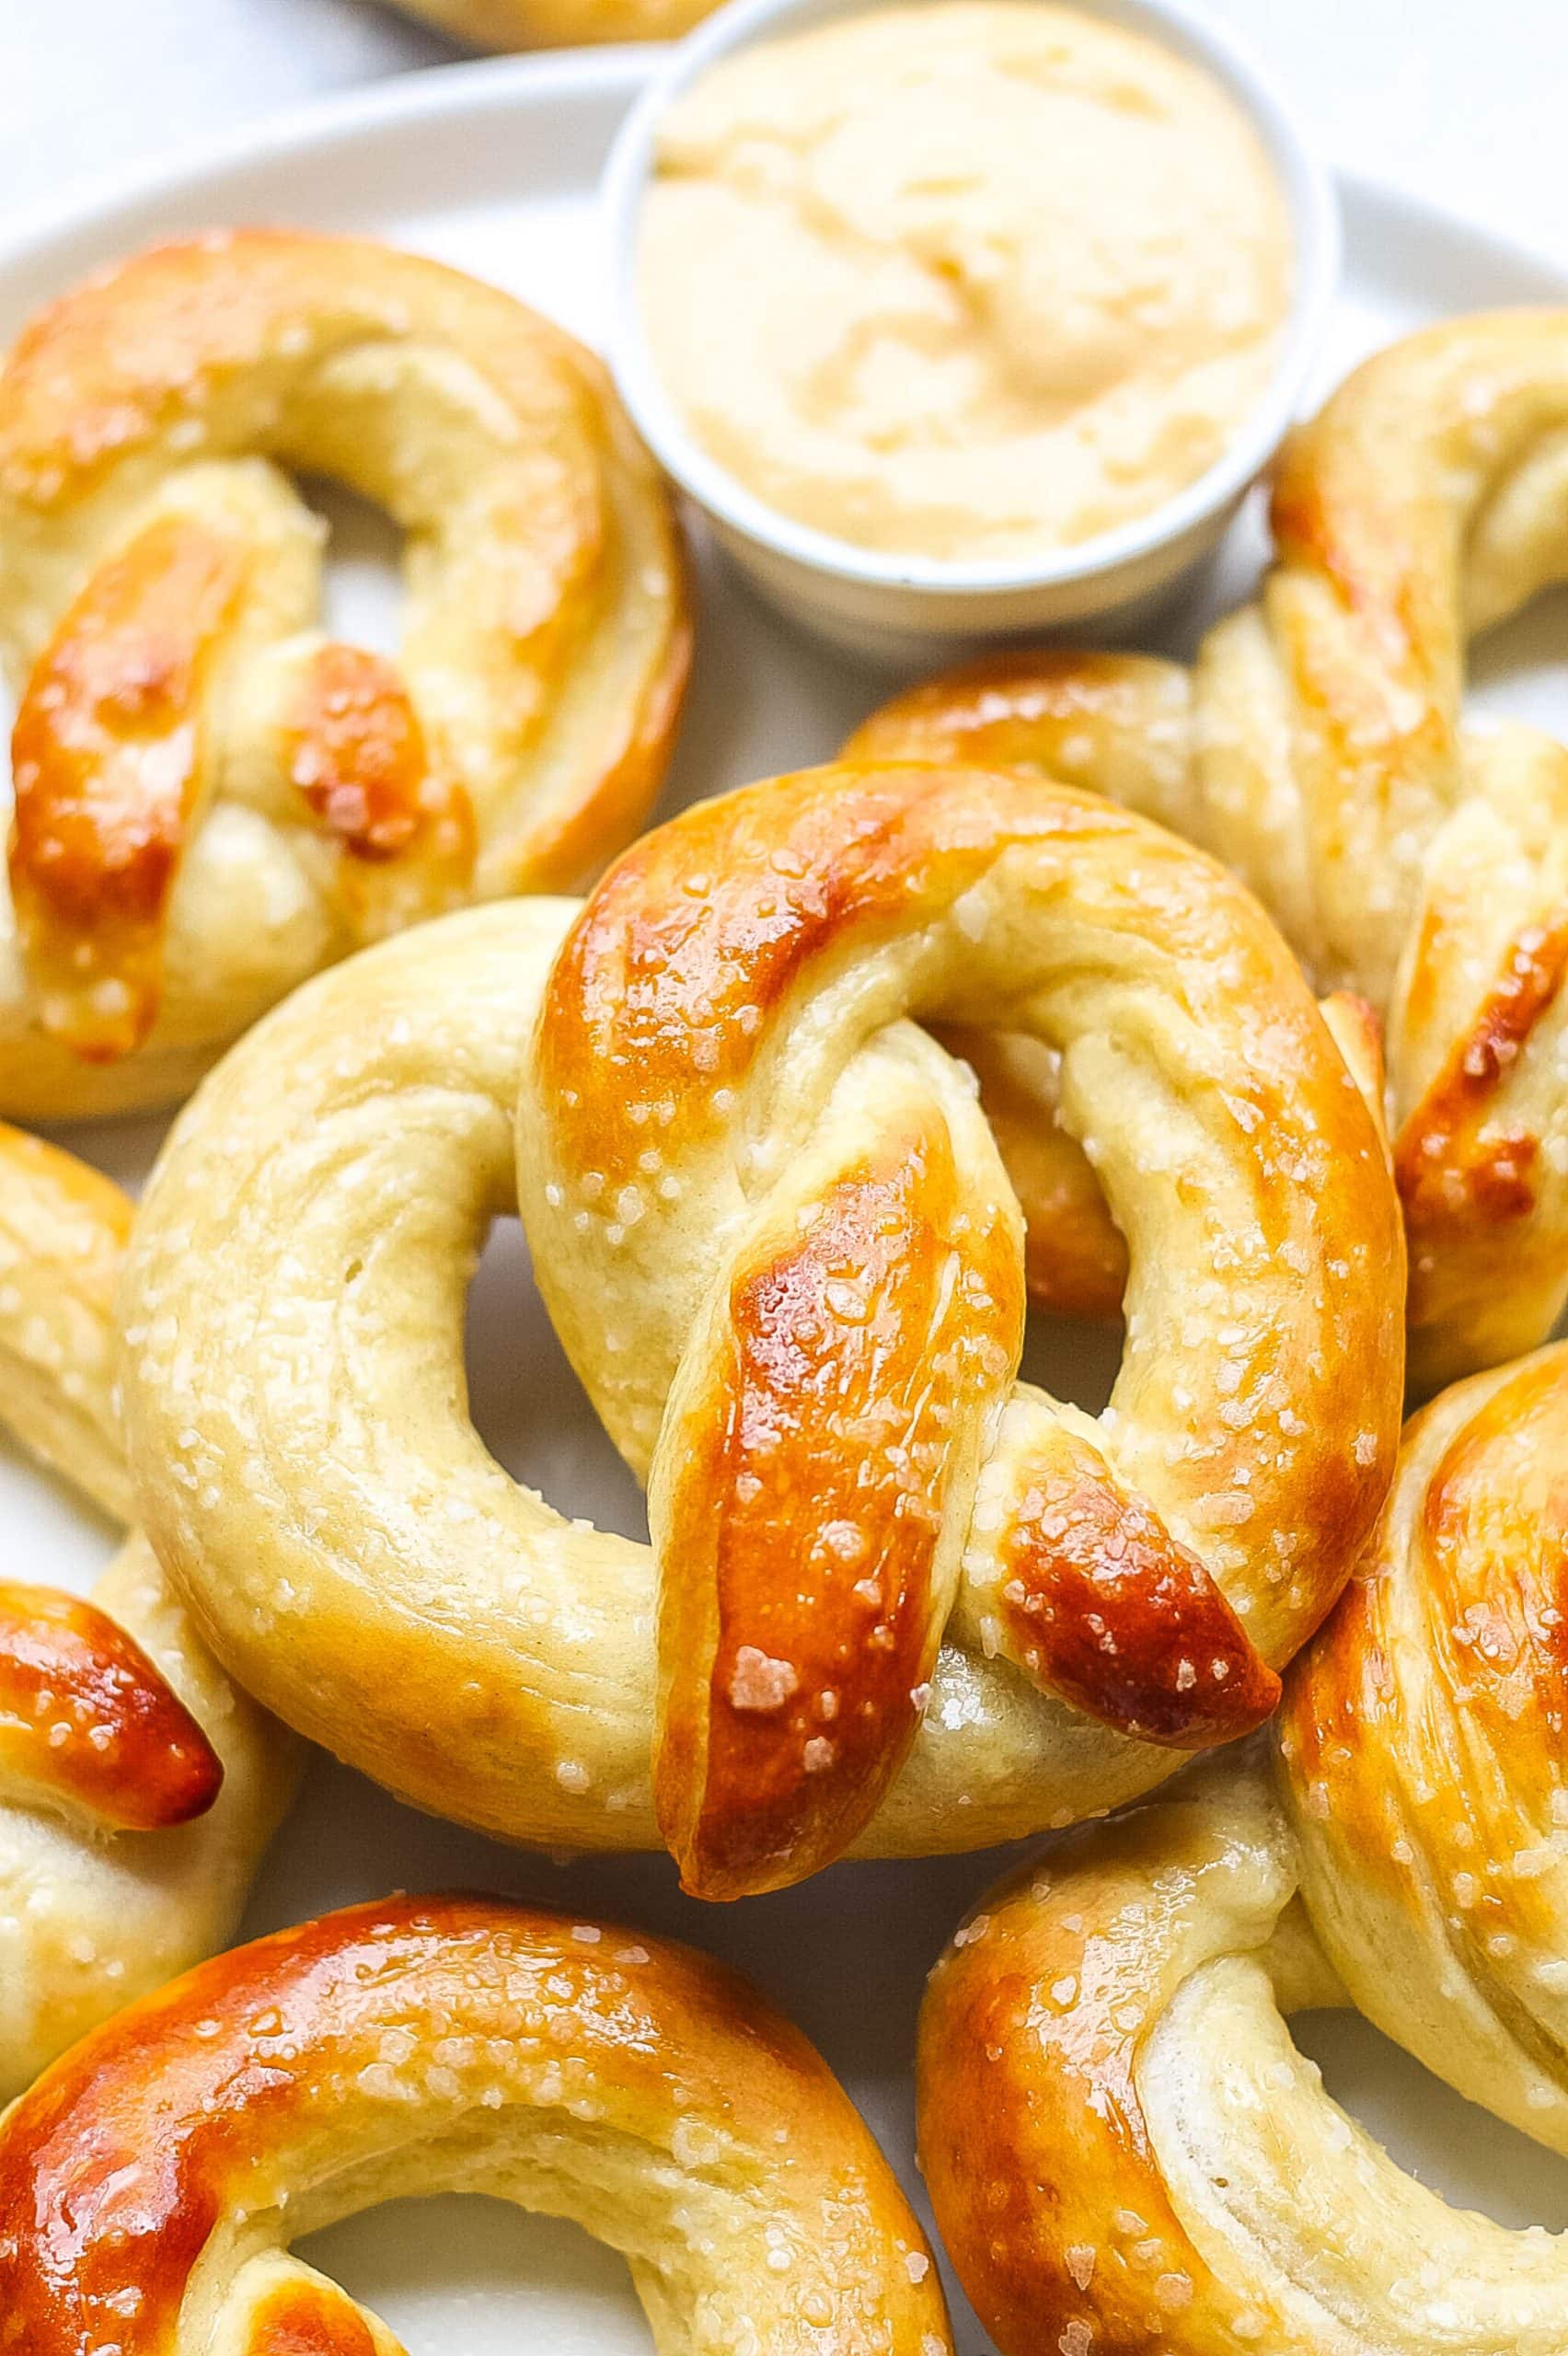 Soft pretzels